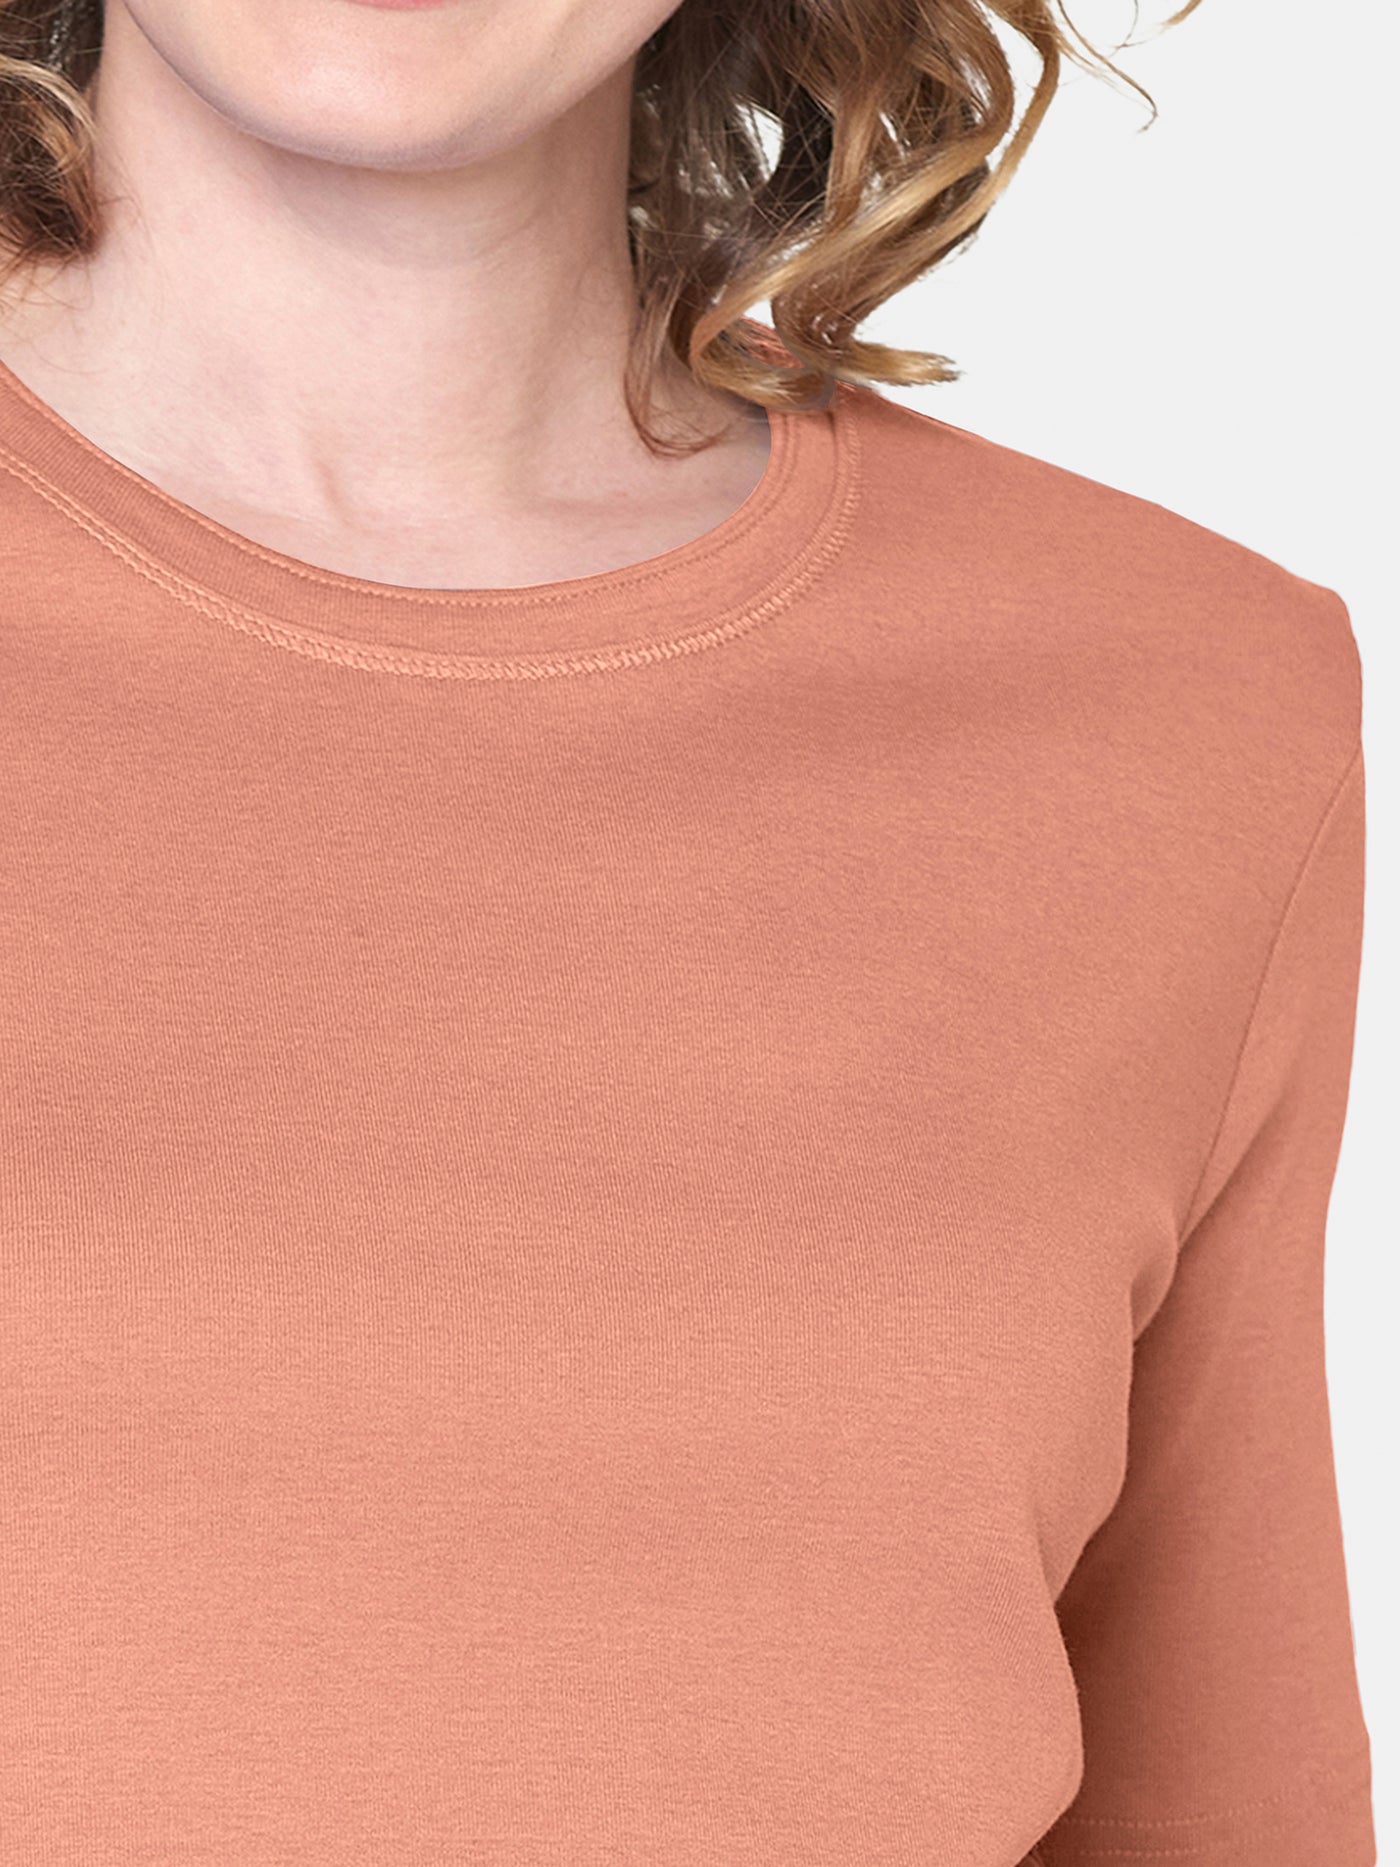 T-shirt - Orange/Coral